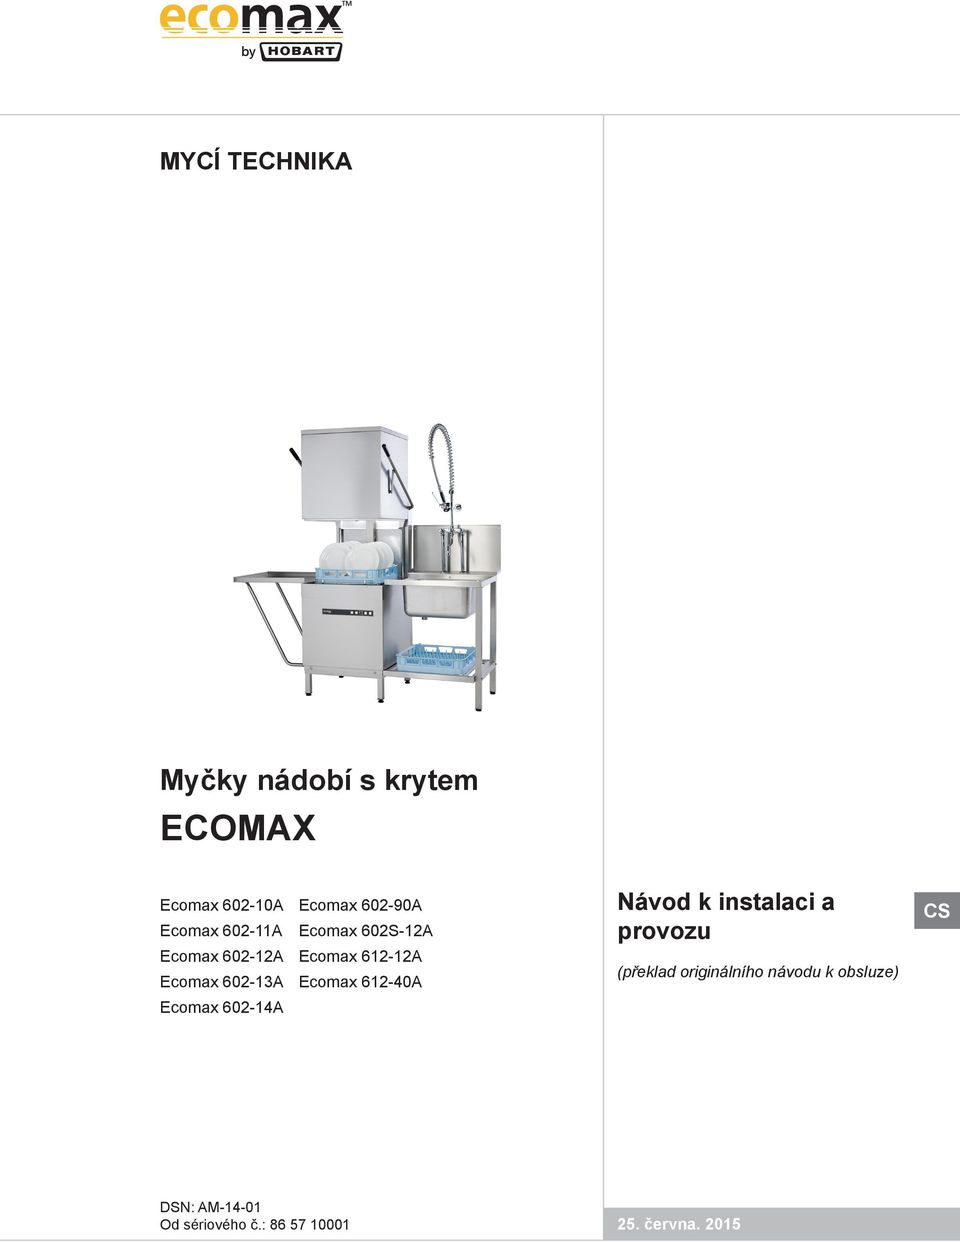 Ecomax 612-40A Ecomax 602-14A Návod k instalaci a provozu (překlad